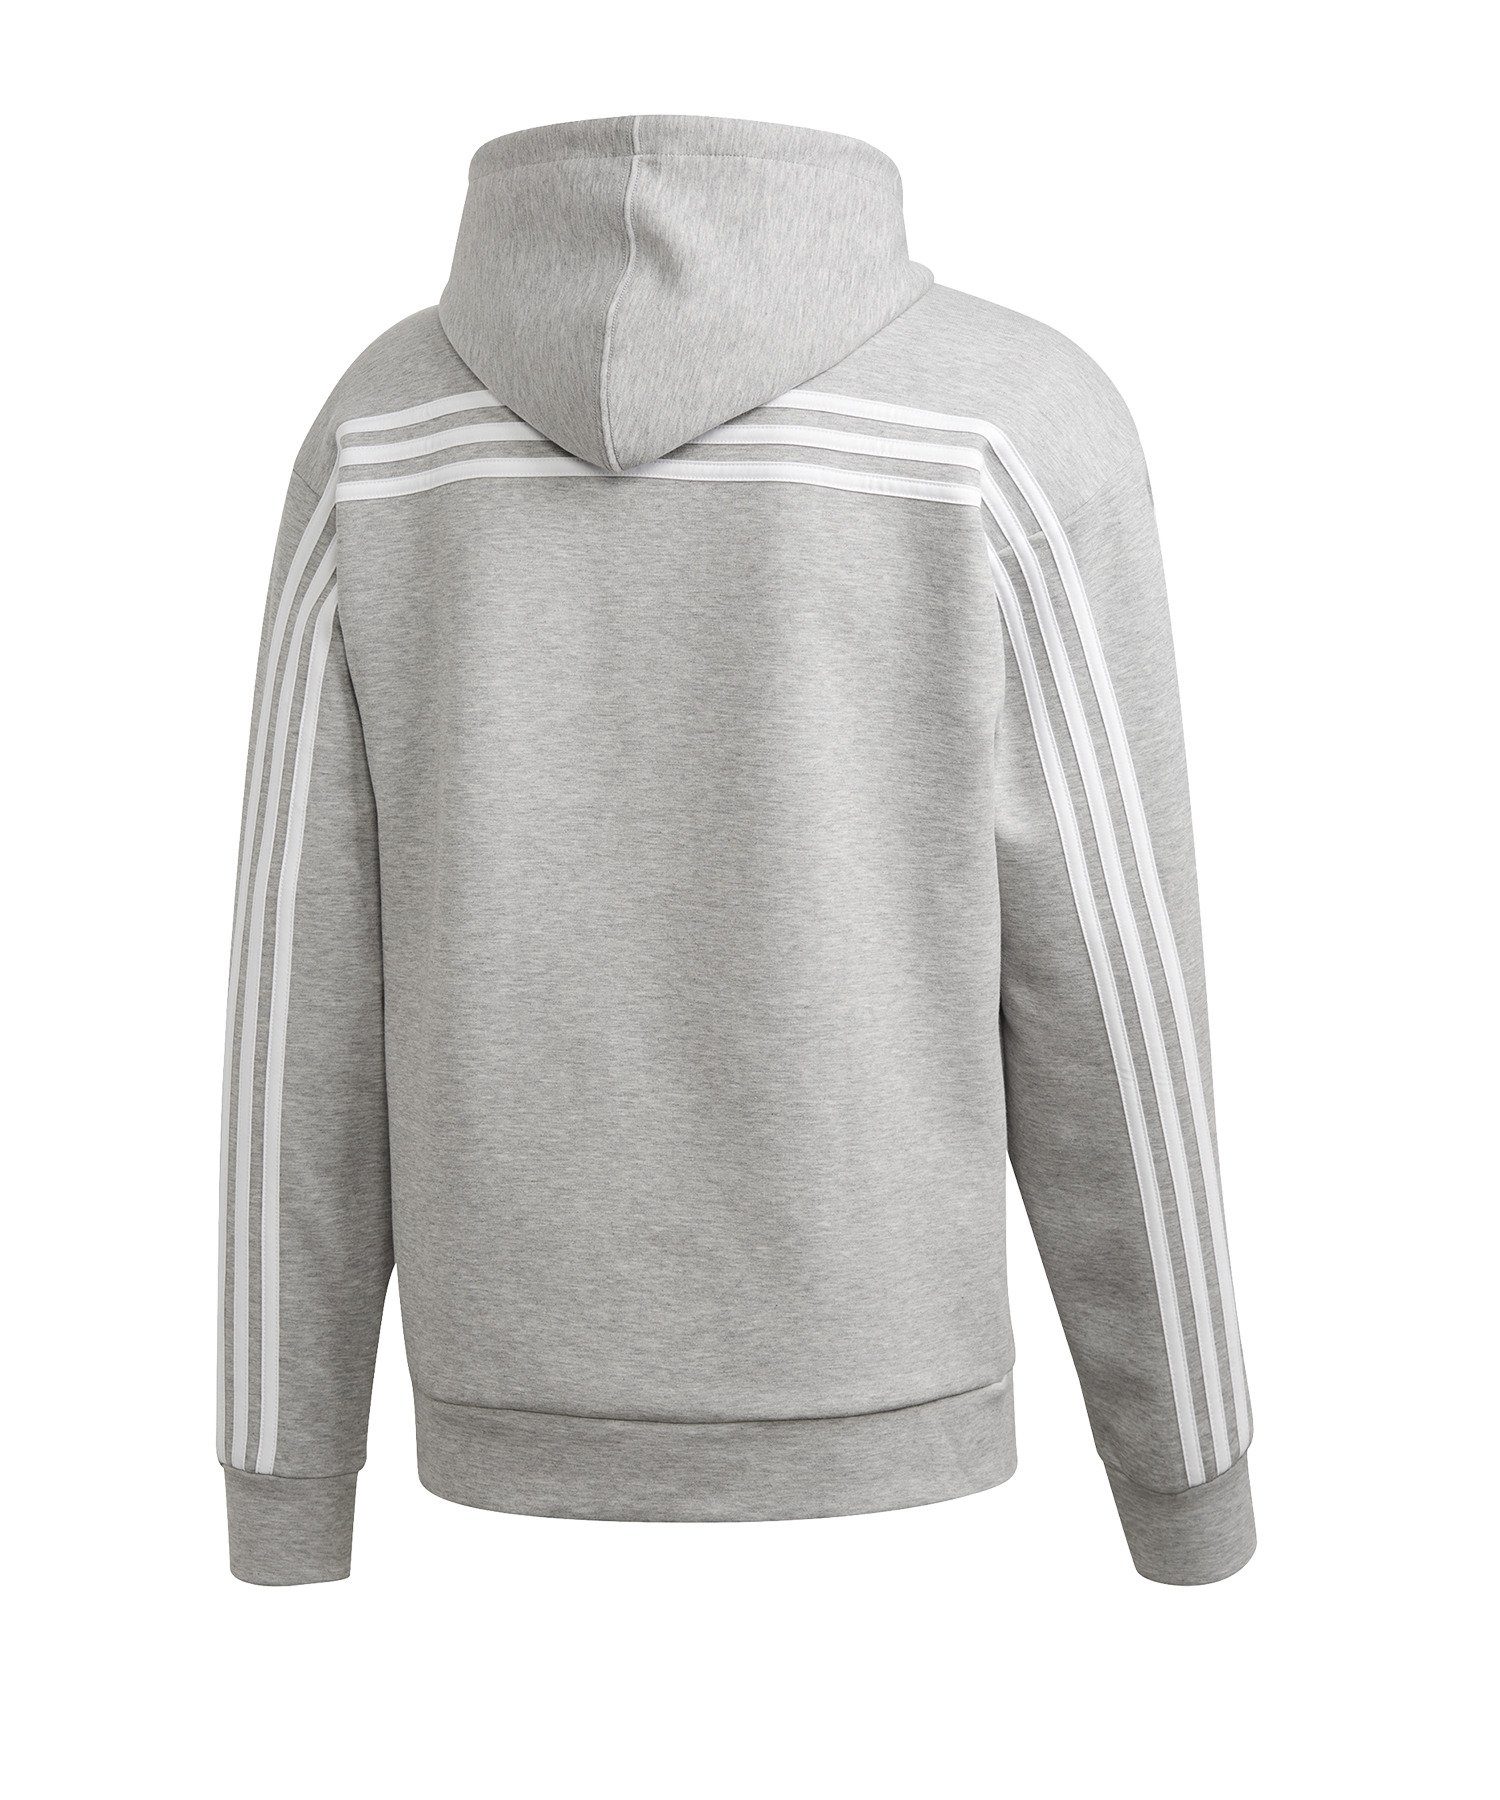 Performance grau Sweatshirt MH Stripes Hoody adidas 3